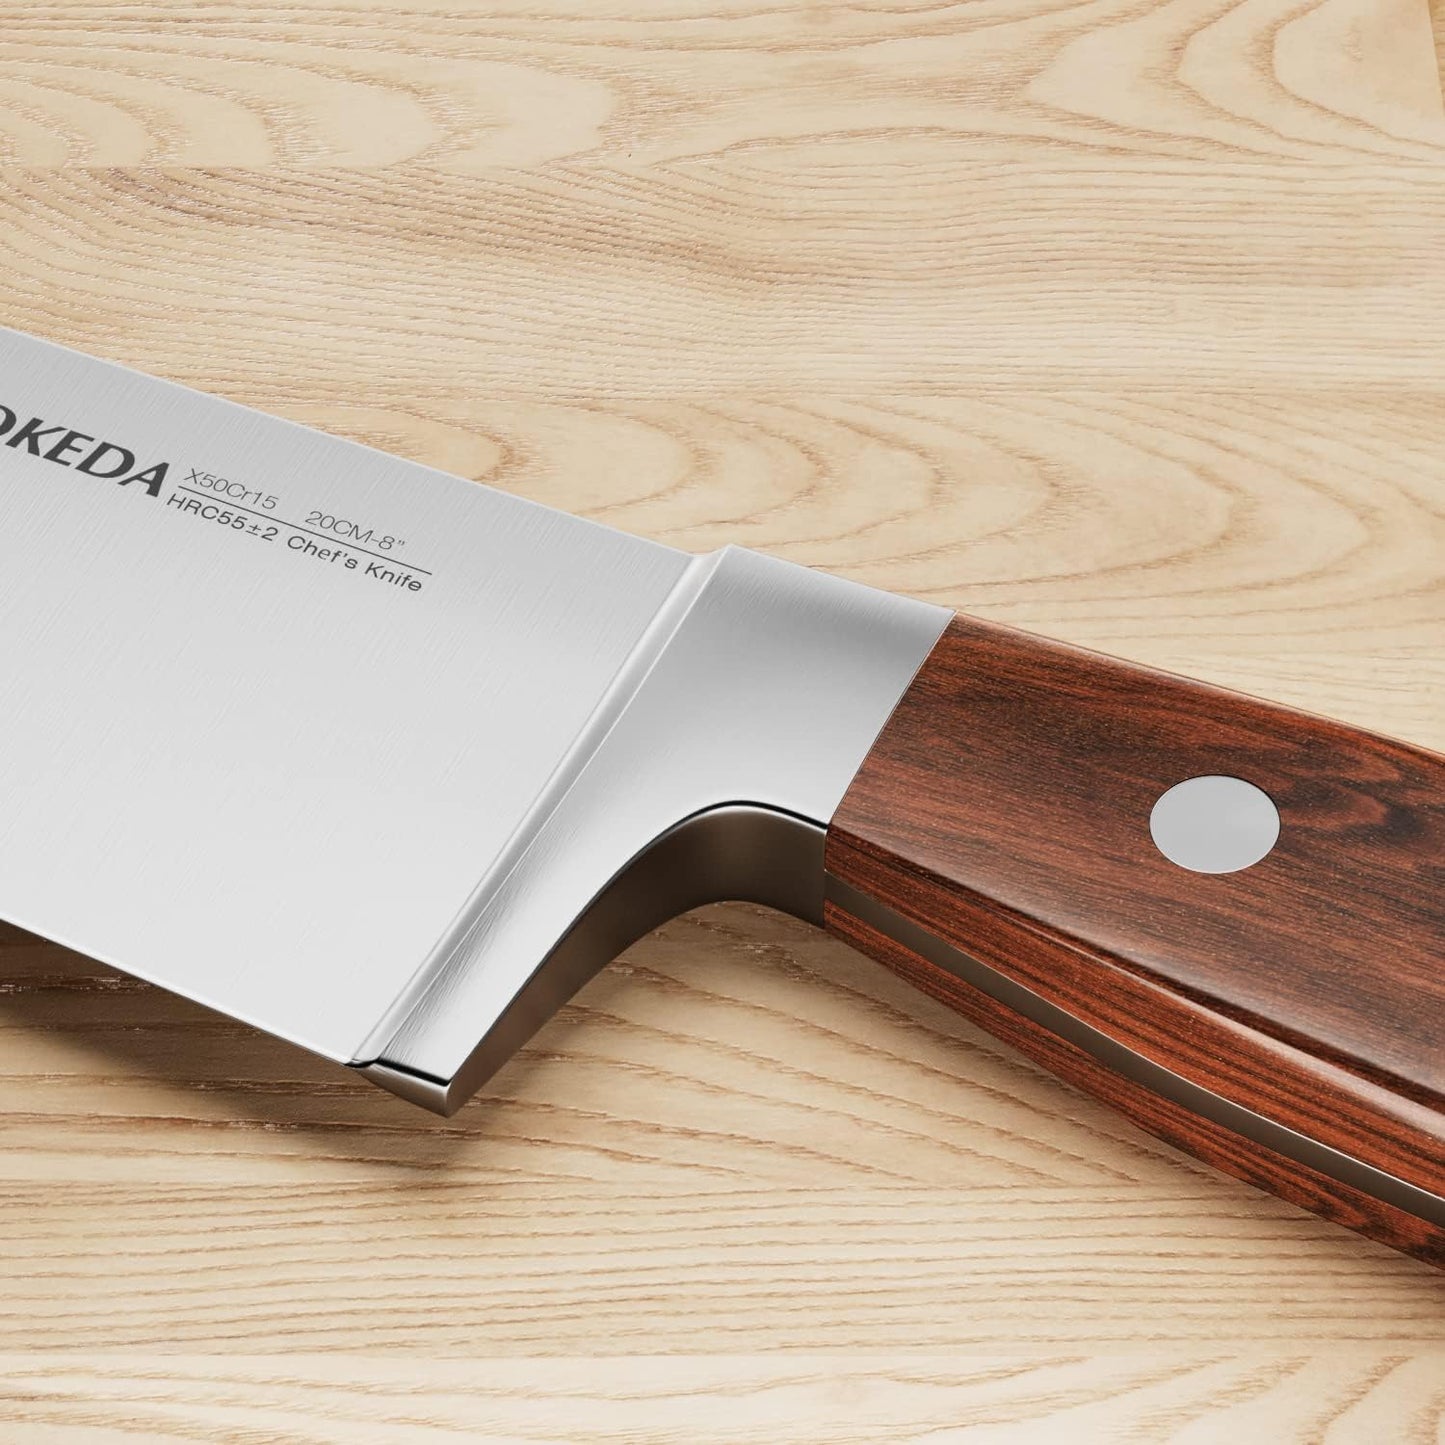 KD 15-Piece Kitchen Knife Set with Block Pakkawood Handle